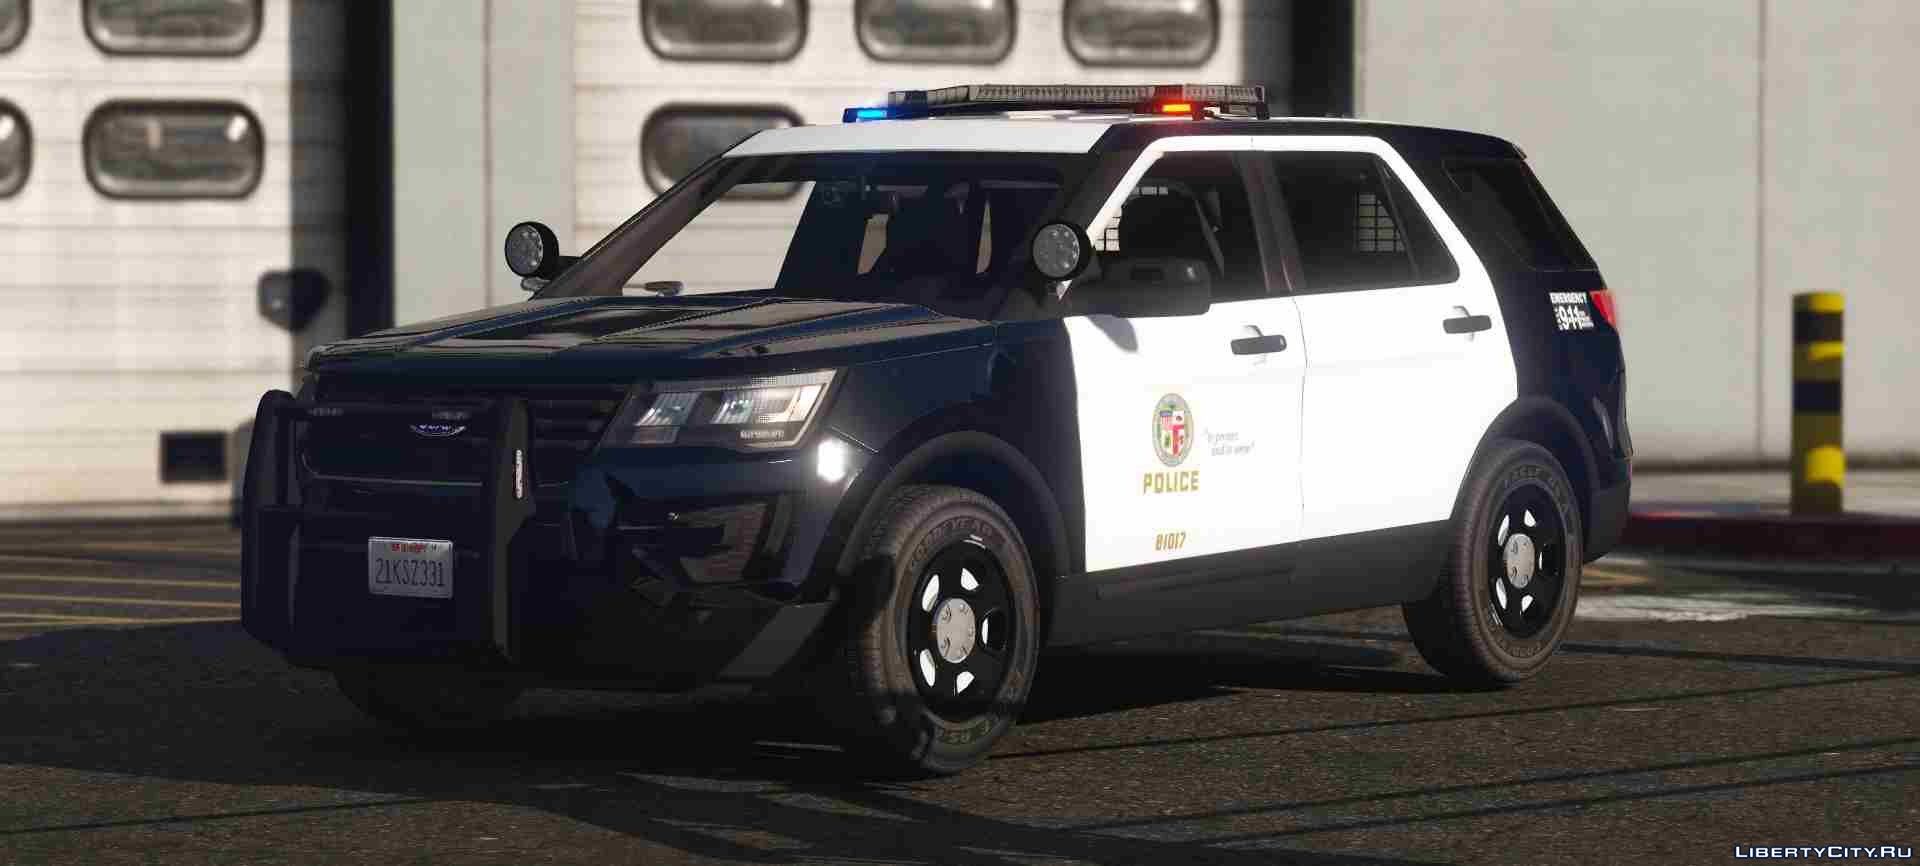 Ford police interceptor utility gta 5 (120) фото